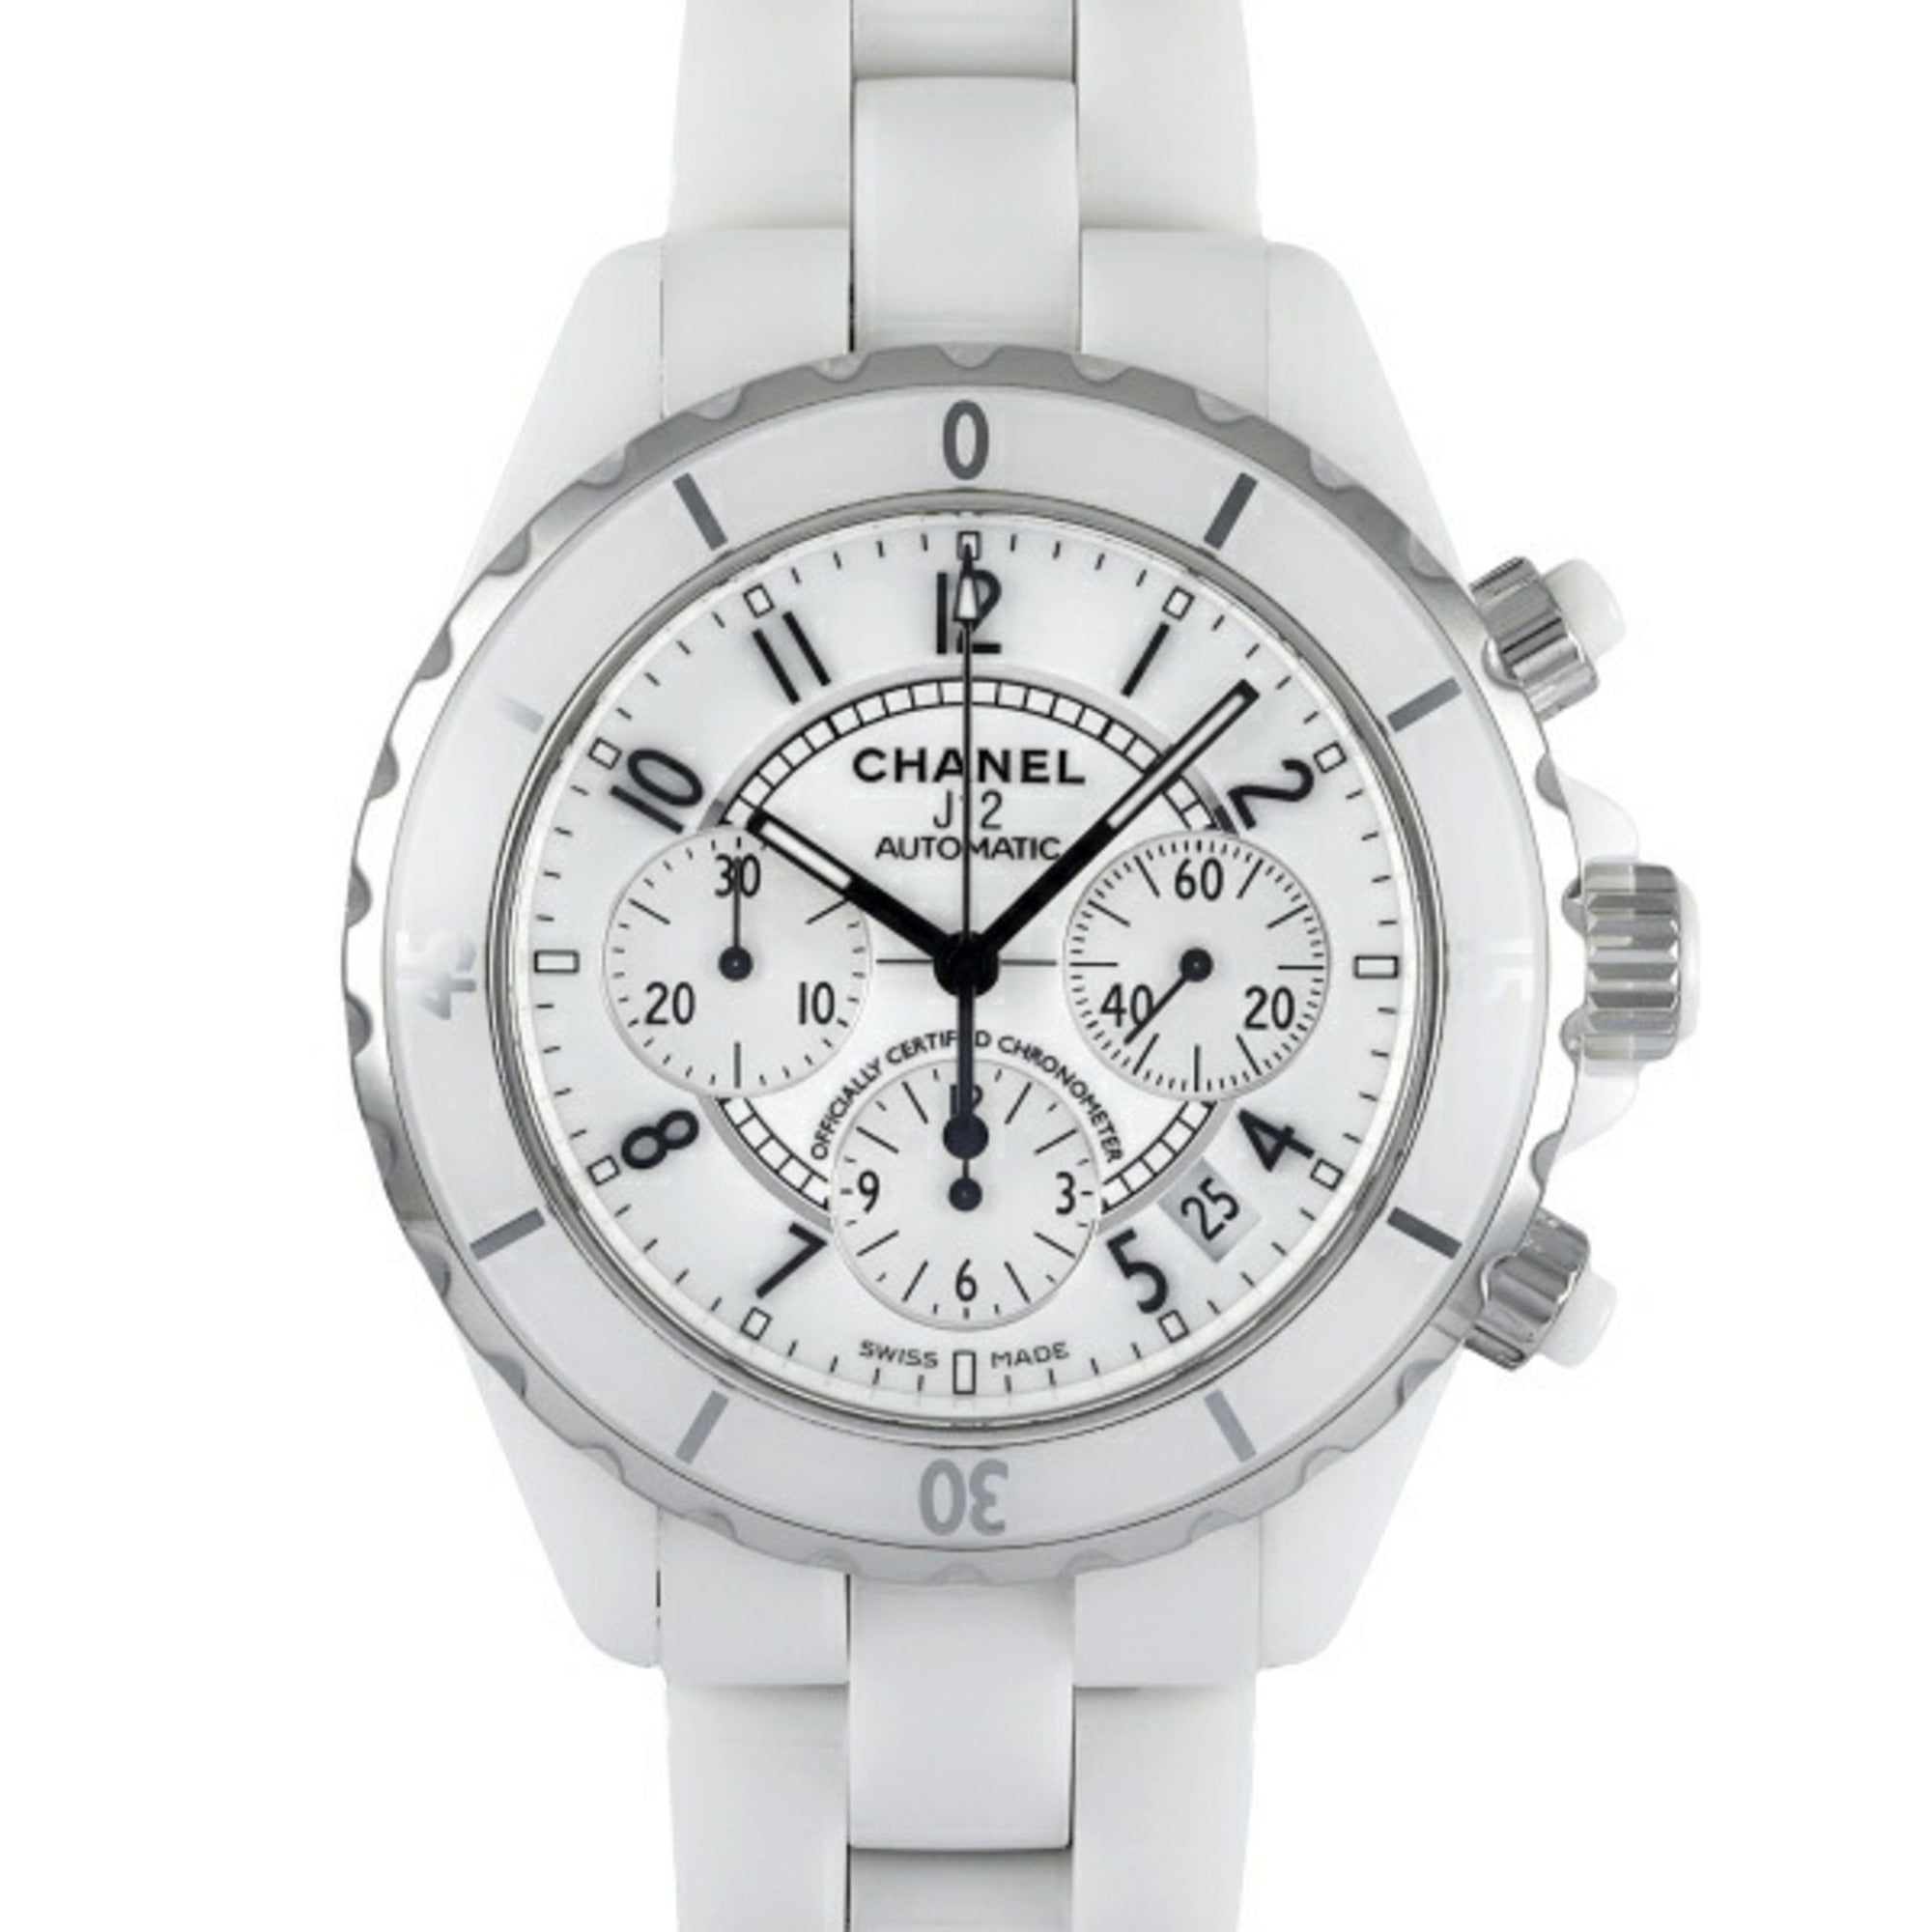 CHANEL J12 chronograph H1007 white dial watch men's